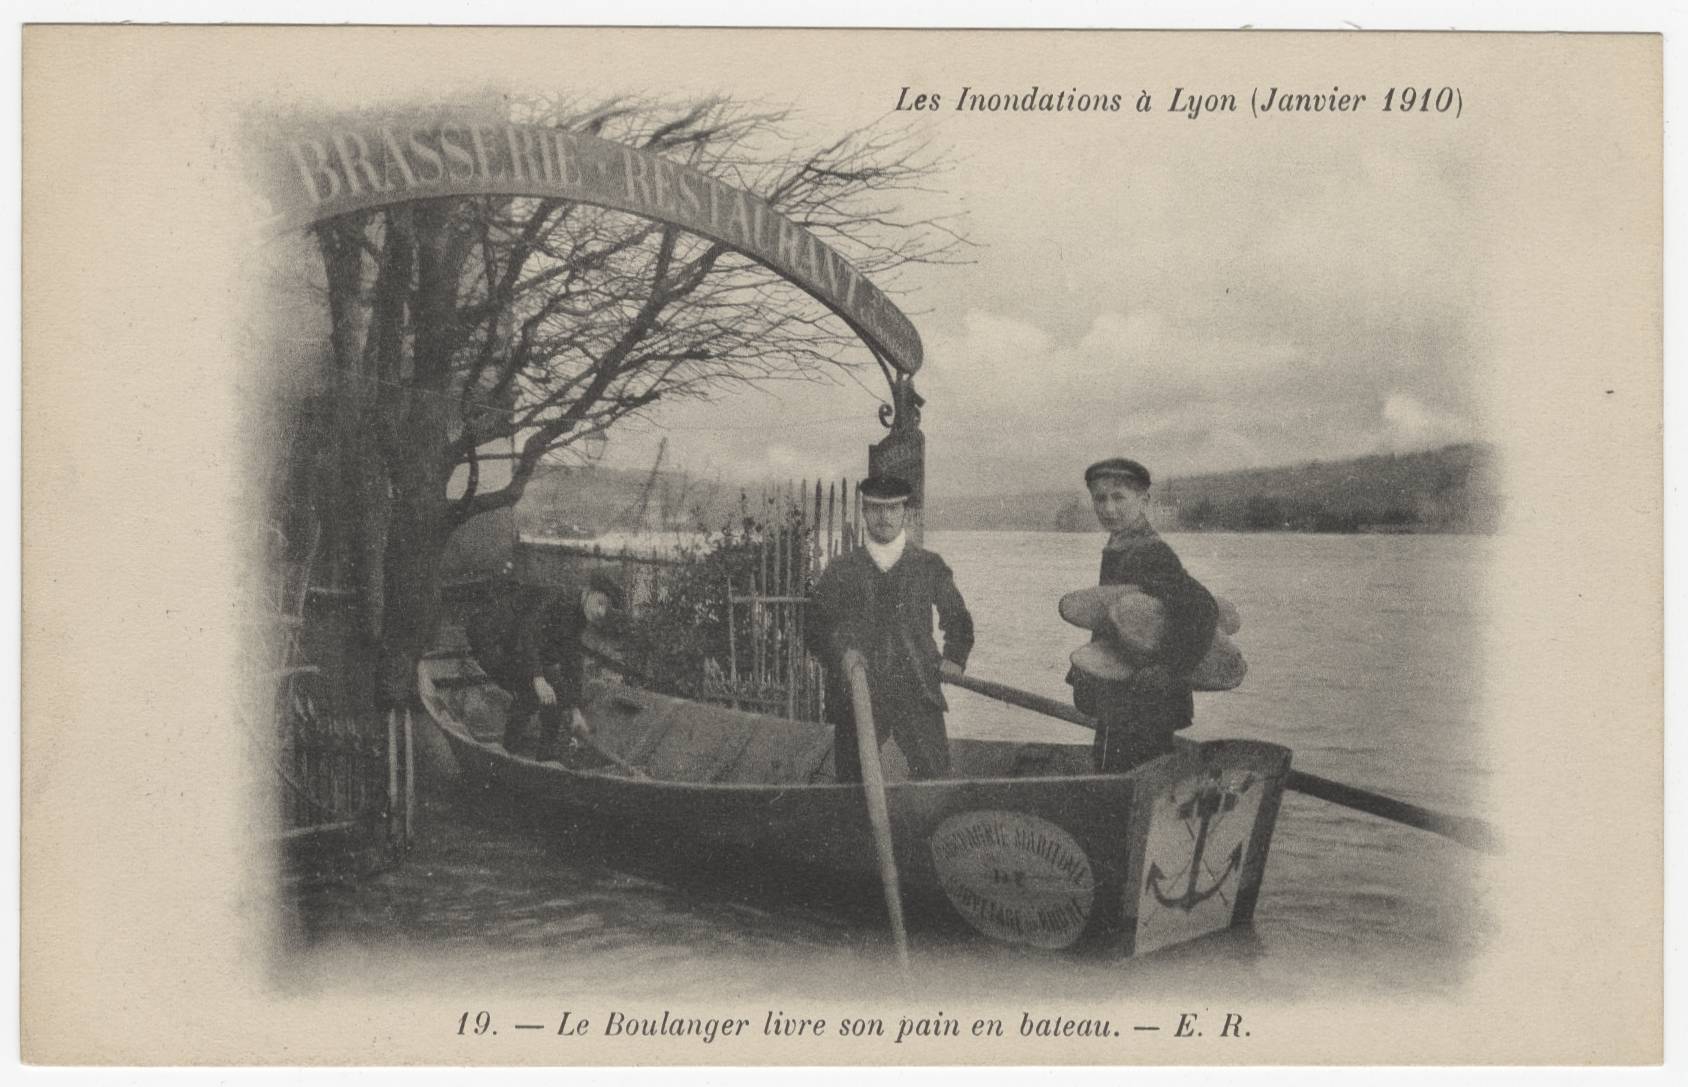 Le boulanger livre son pain en bateau - Inondations à Lyon : carte postale NB (1910, cote : 4FI/3247)